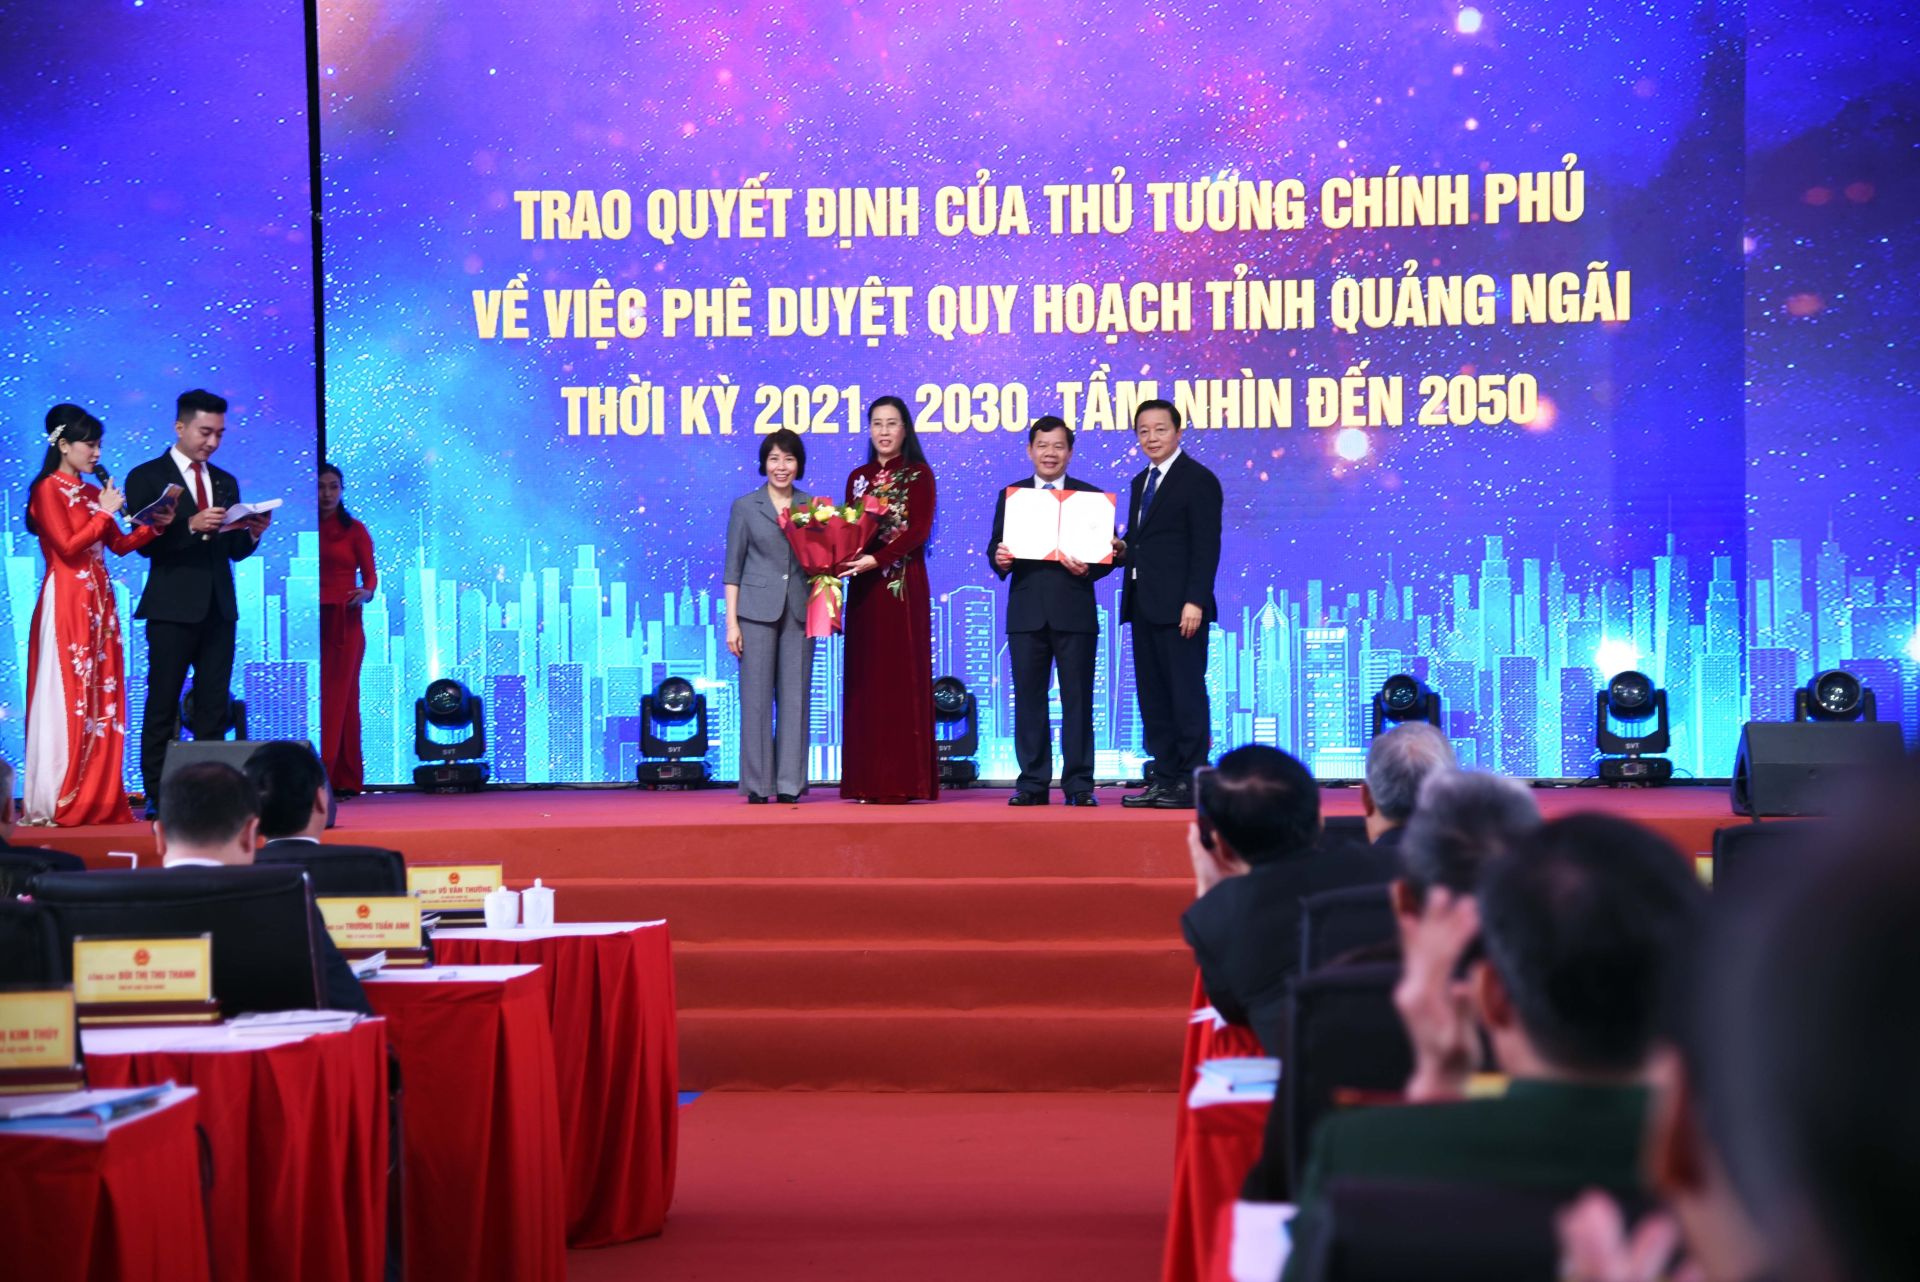 Phó Thủ tướng Chính phủ Trần Hồng Hà trao Quyết định phê duyệt Quy hoạch tỉnh Quảng Ngãi thời kỳ 2021-2030, tầm nhìn 2050 cho lãnh đạo tỉnh Quảng Ngãi